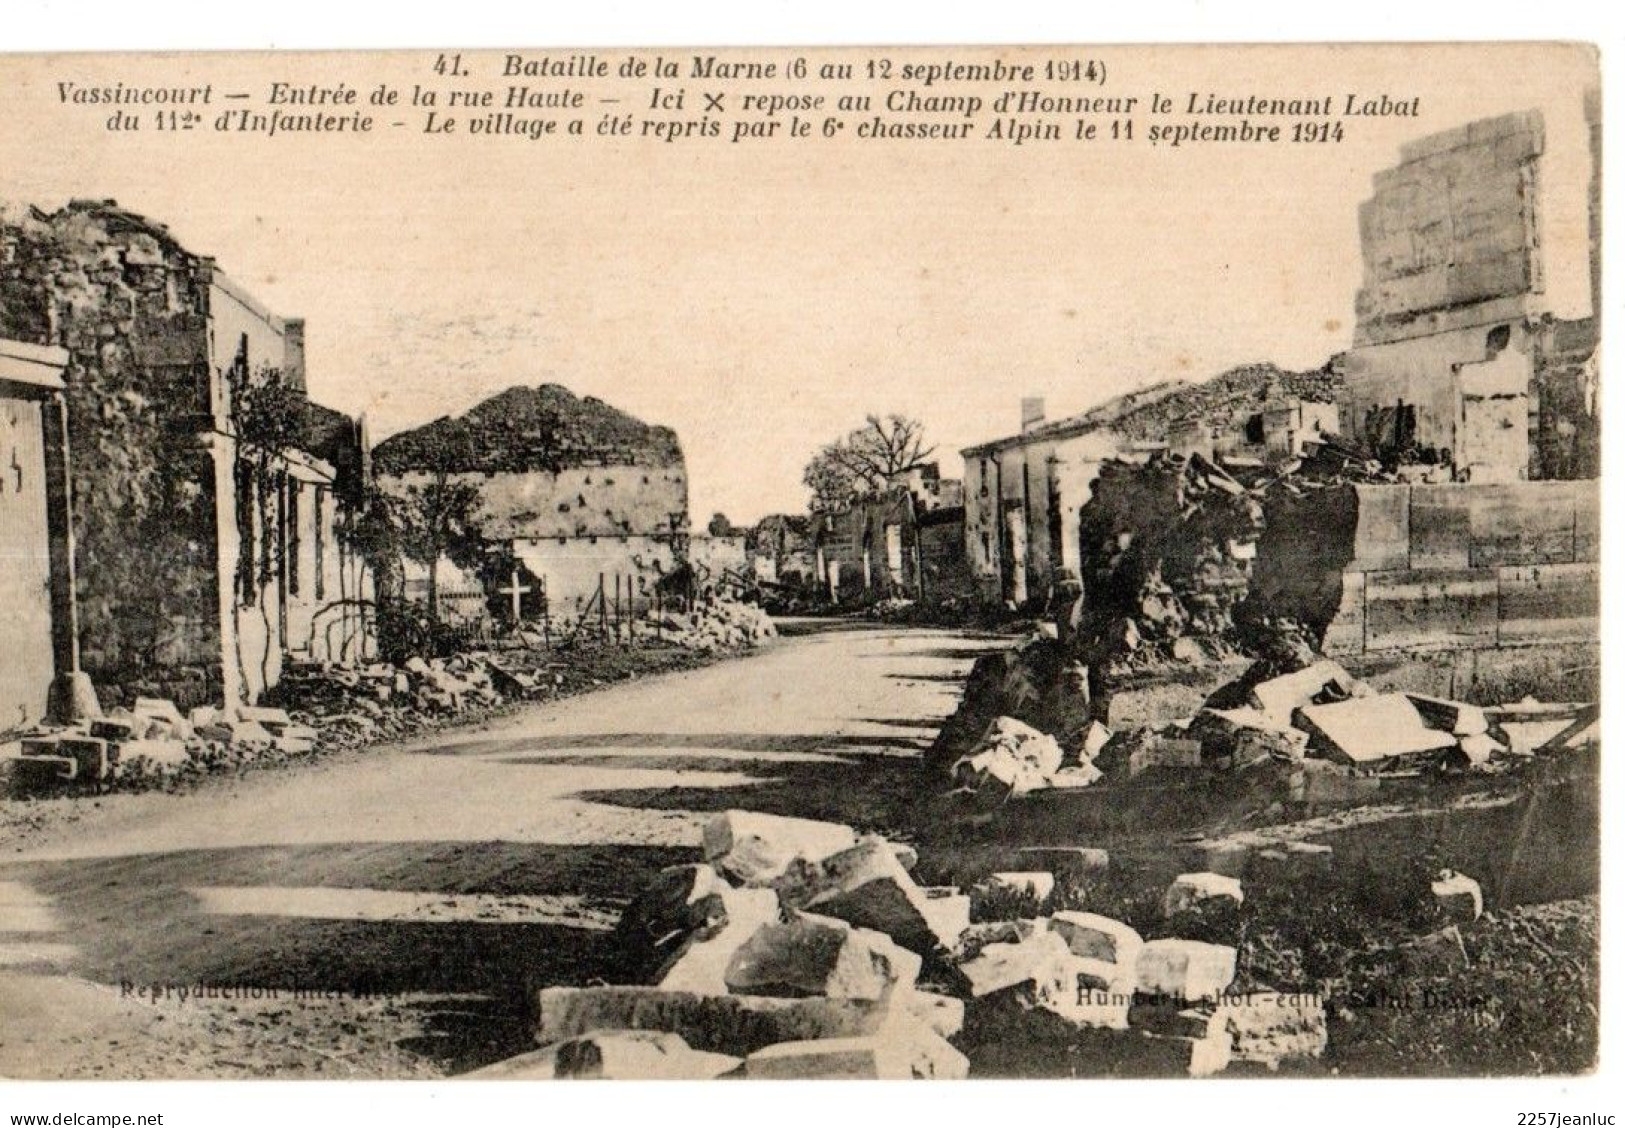 Bataille de la Marne lot 18 CP (du 6 au 12 Septembre 1914 avec Correspondance de Revigny  et Villers au dos )